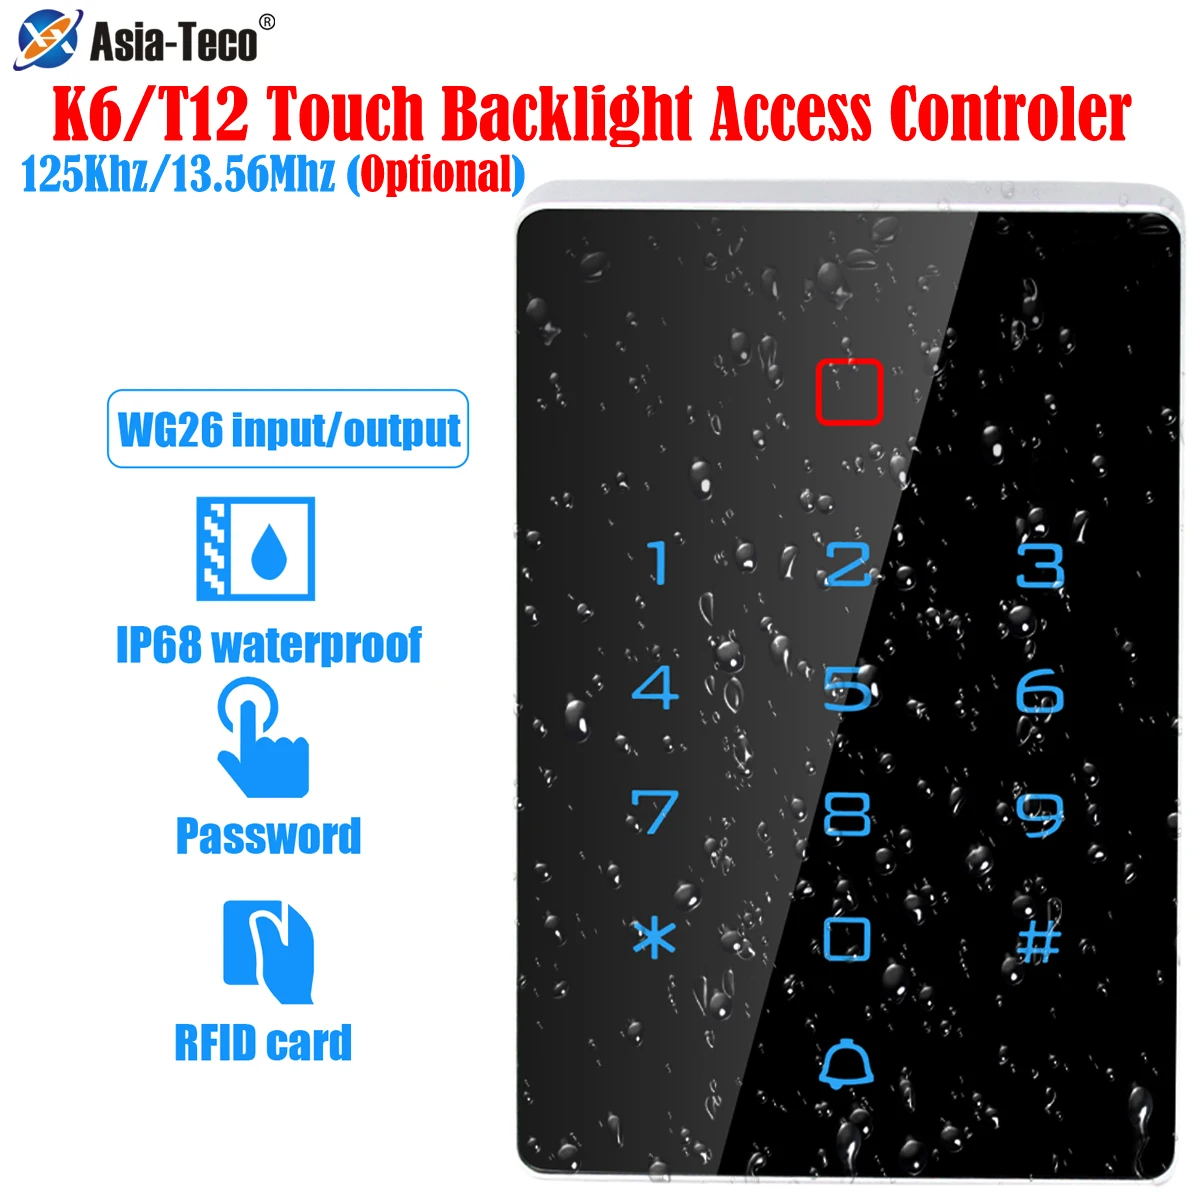 Teclado de Control de acceso táctil, controlador de acceso independiente a prueba de agua IP68, lector Wiegand, 125Khz, RFID, 13,56 MHz, 2000